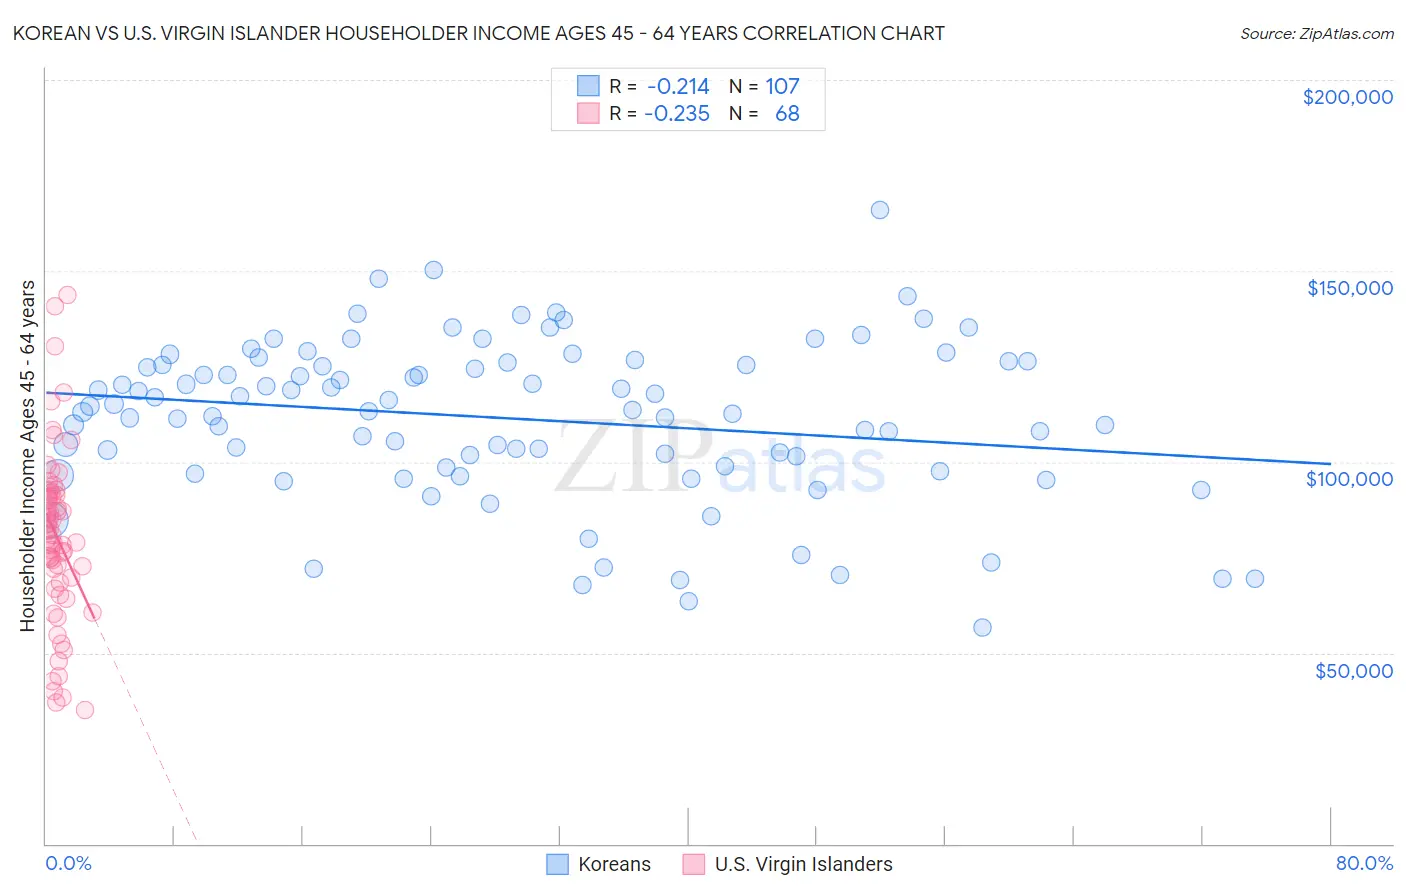 Korean vs U.S. Virgin Islander Householder Income Ages 45 - 64 years